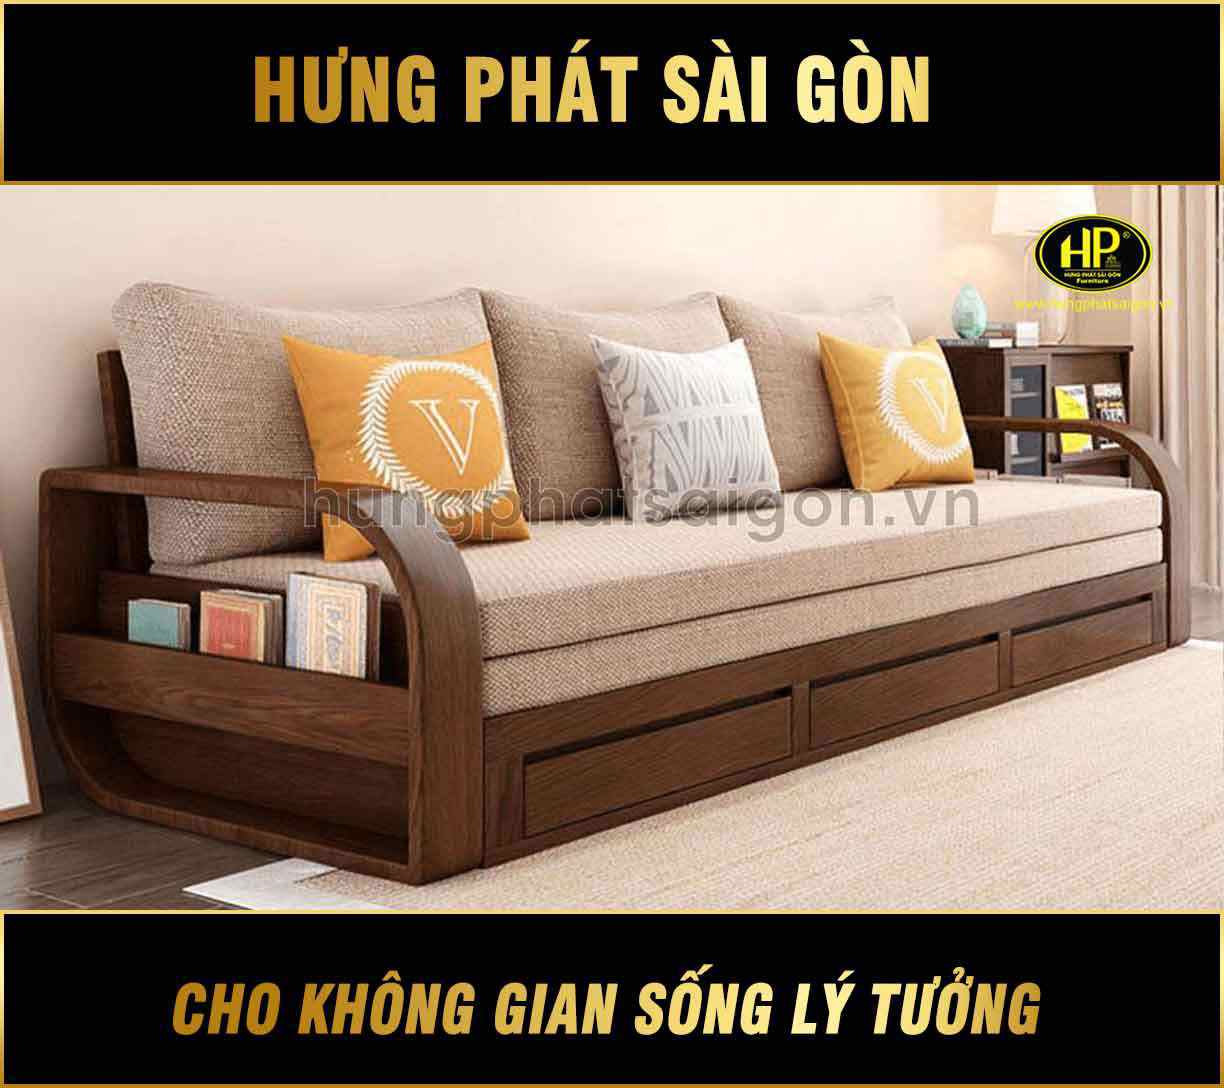 Sofa giường gỗ: Sofa giường gỗ là sản phẩm được nhiều người lựa chọn vì tính đa năng. Tại Hưng Phát Sài Gòn, chúng tôi cung cấp các sản phẩm sofa giường gỗ chất lượng cao với thiết kế đẹp mắt và ấn tượng. Hãy tham khảo hình ảnh để lựa chọn sản phẩm phù hợp nhất cho gia đình bạn.